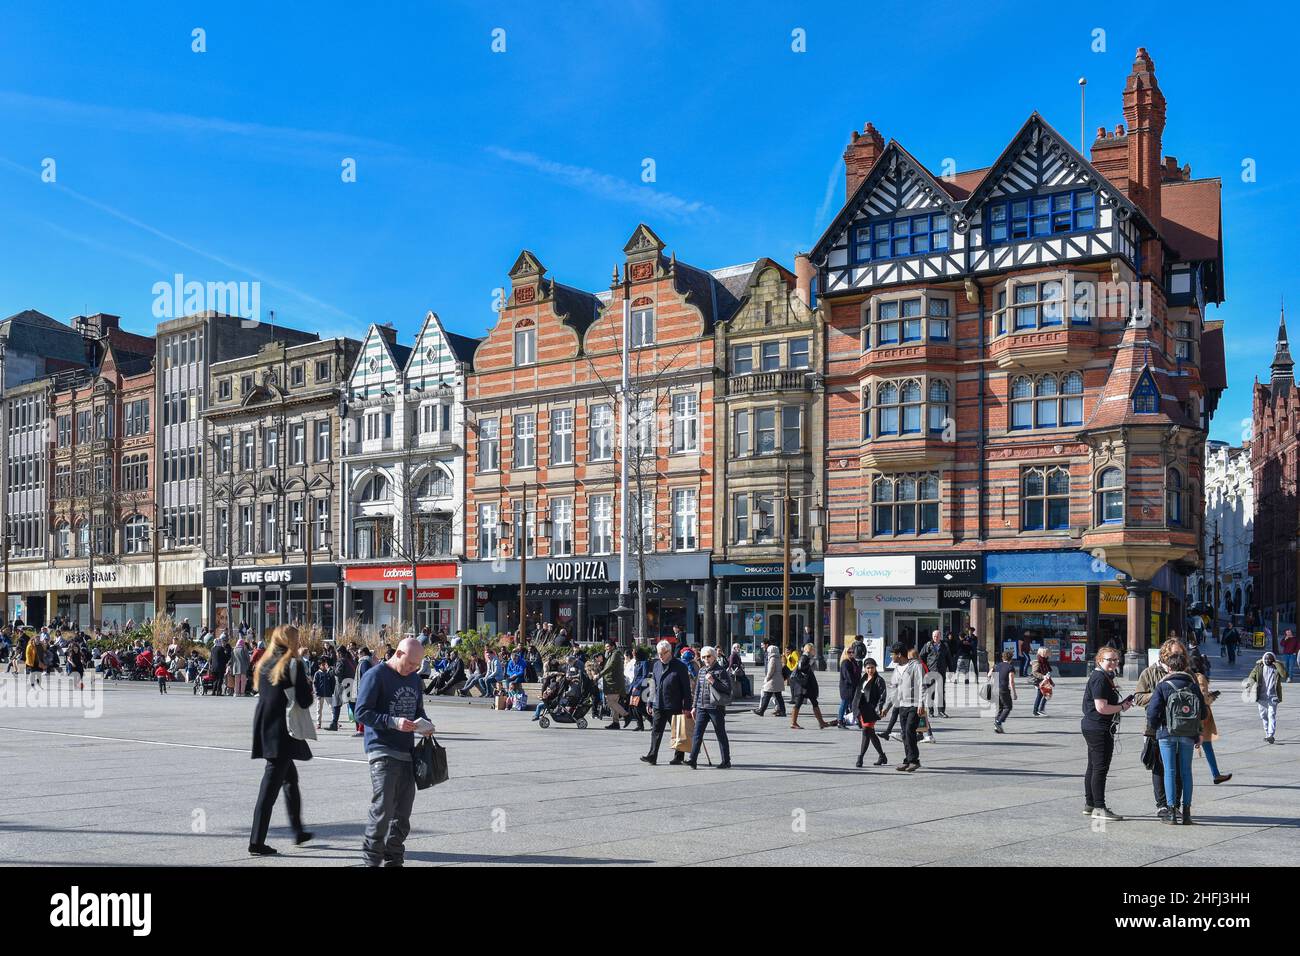 Blick auf die traditionelle Architektur und die historische Geschichte der Geschäfte auf dem alten Marktplatz im Herzen des Stadtzentrums von Nottingham East Midlands, England. Stockfoto